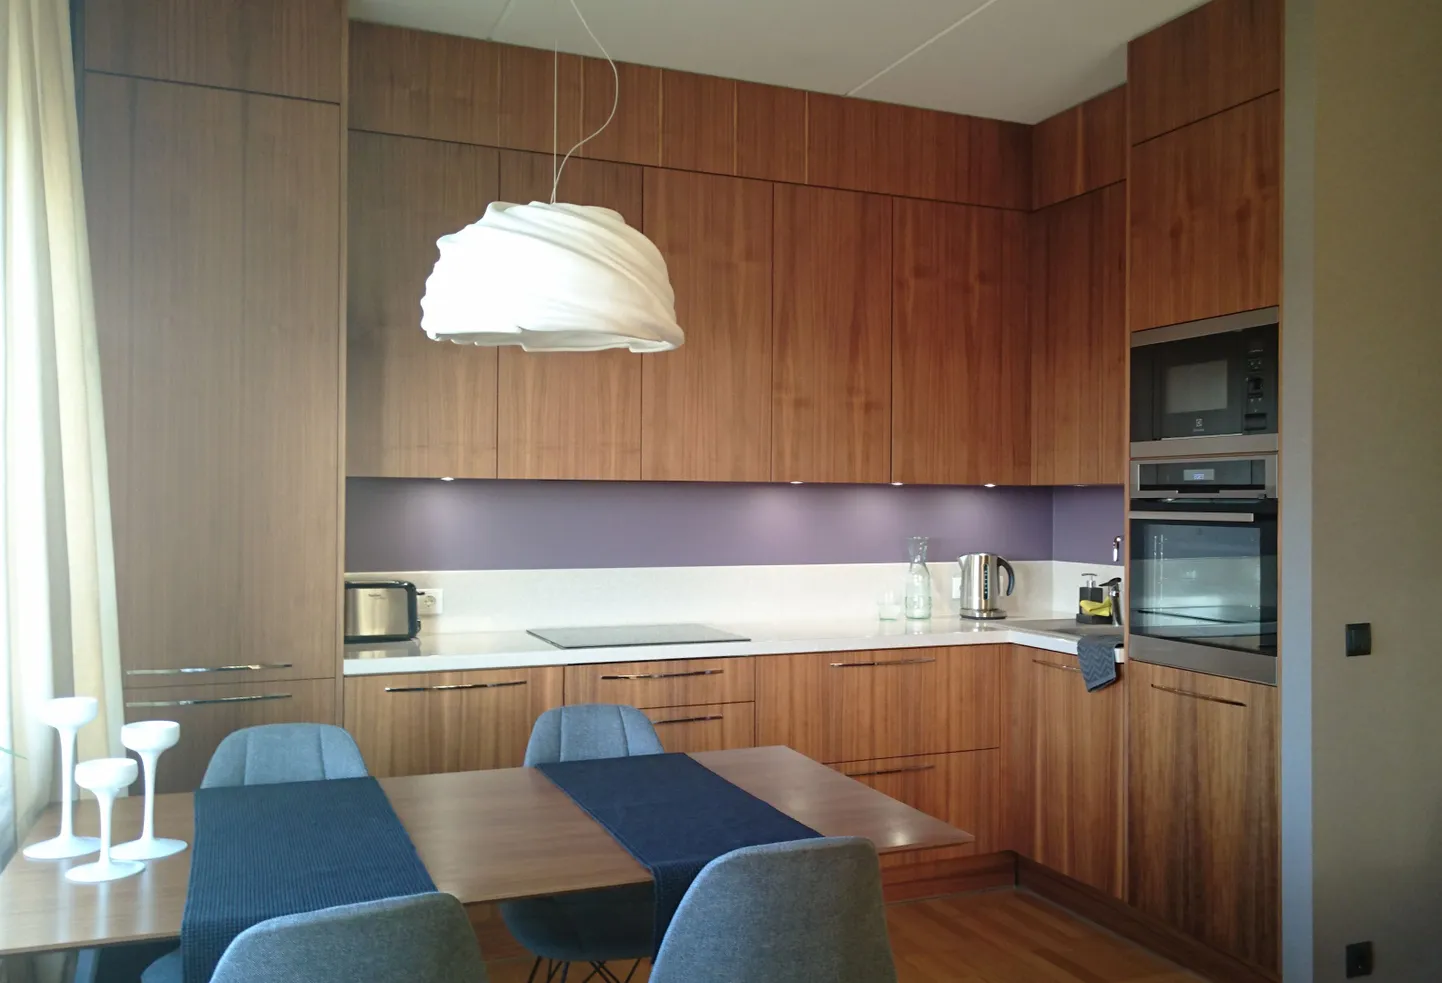 Дизайн современной кухни тяготеет к простоте. Как правило, это прямые лаконичные формы с минимумом фурнитуры на фасадах. Верхние шкафы до потолка позволяют максимально использовать пространство, а также придают кухне законченный вид.